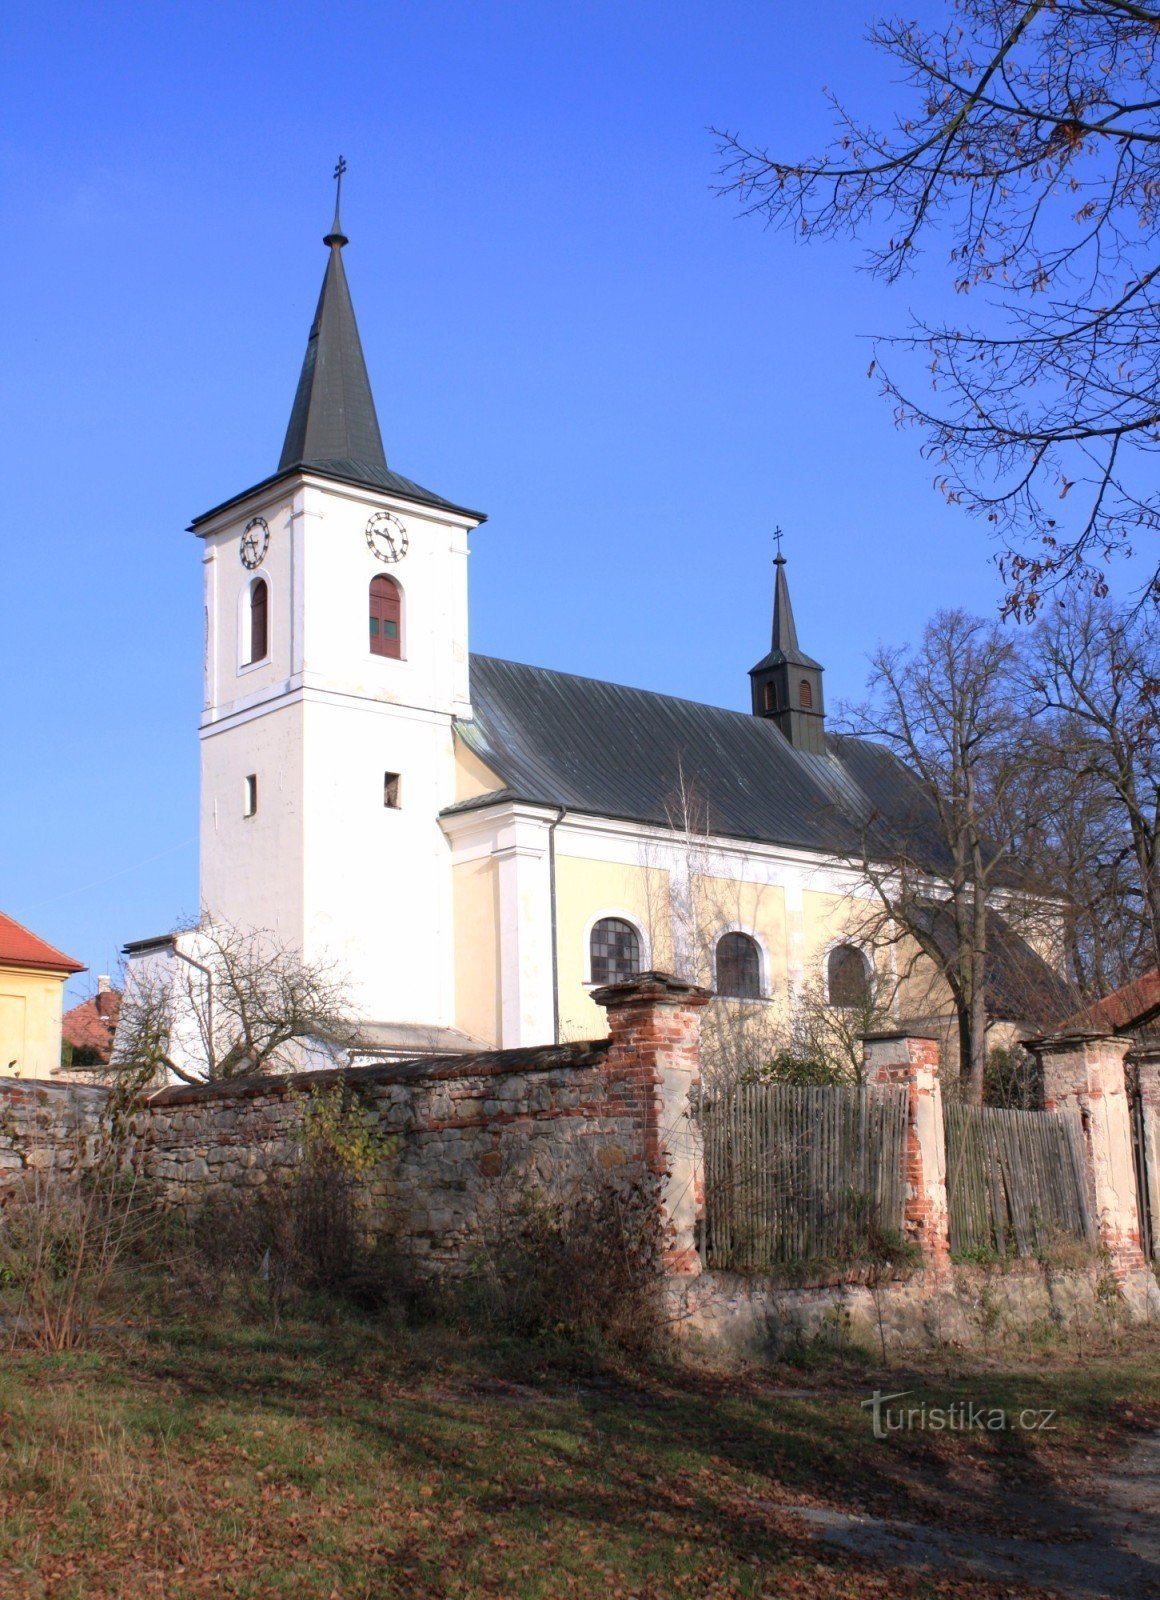 Doubravice nad Svitavou - Kirche St. Johannes der Täufer